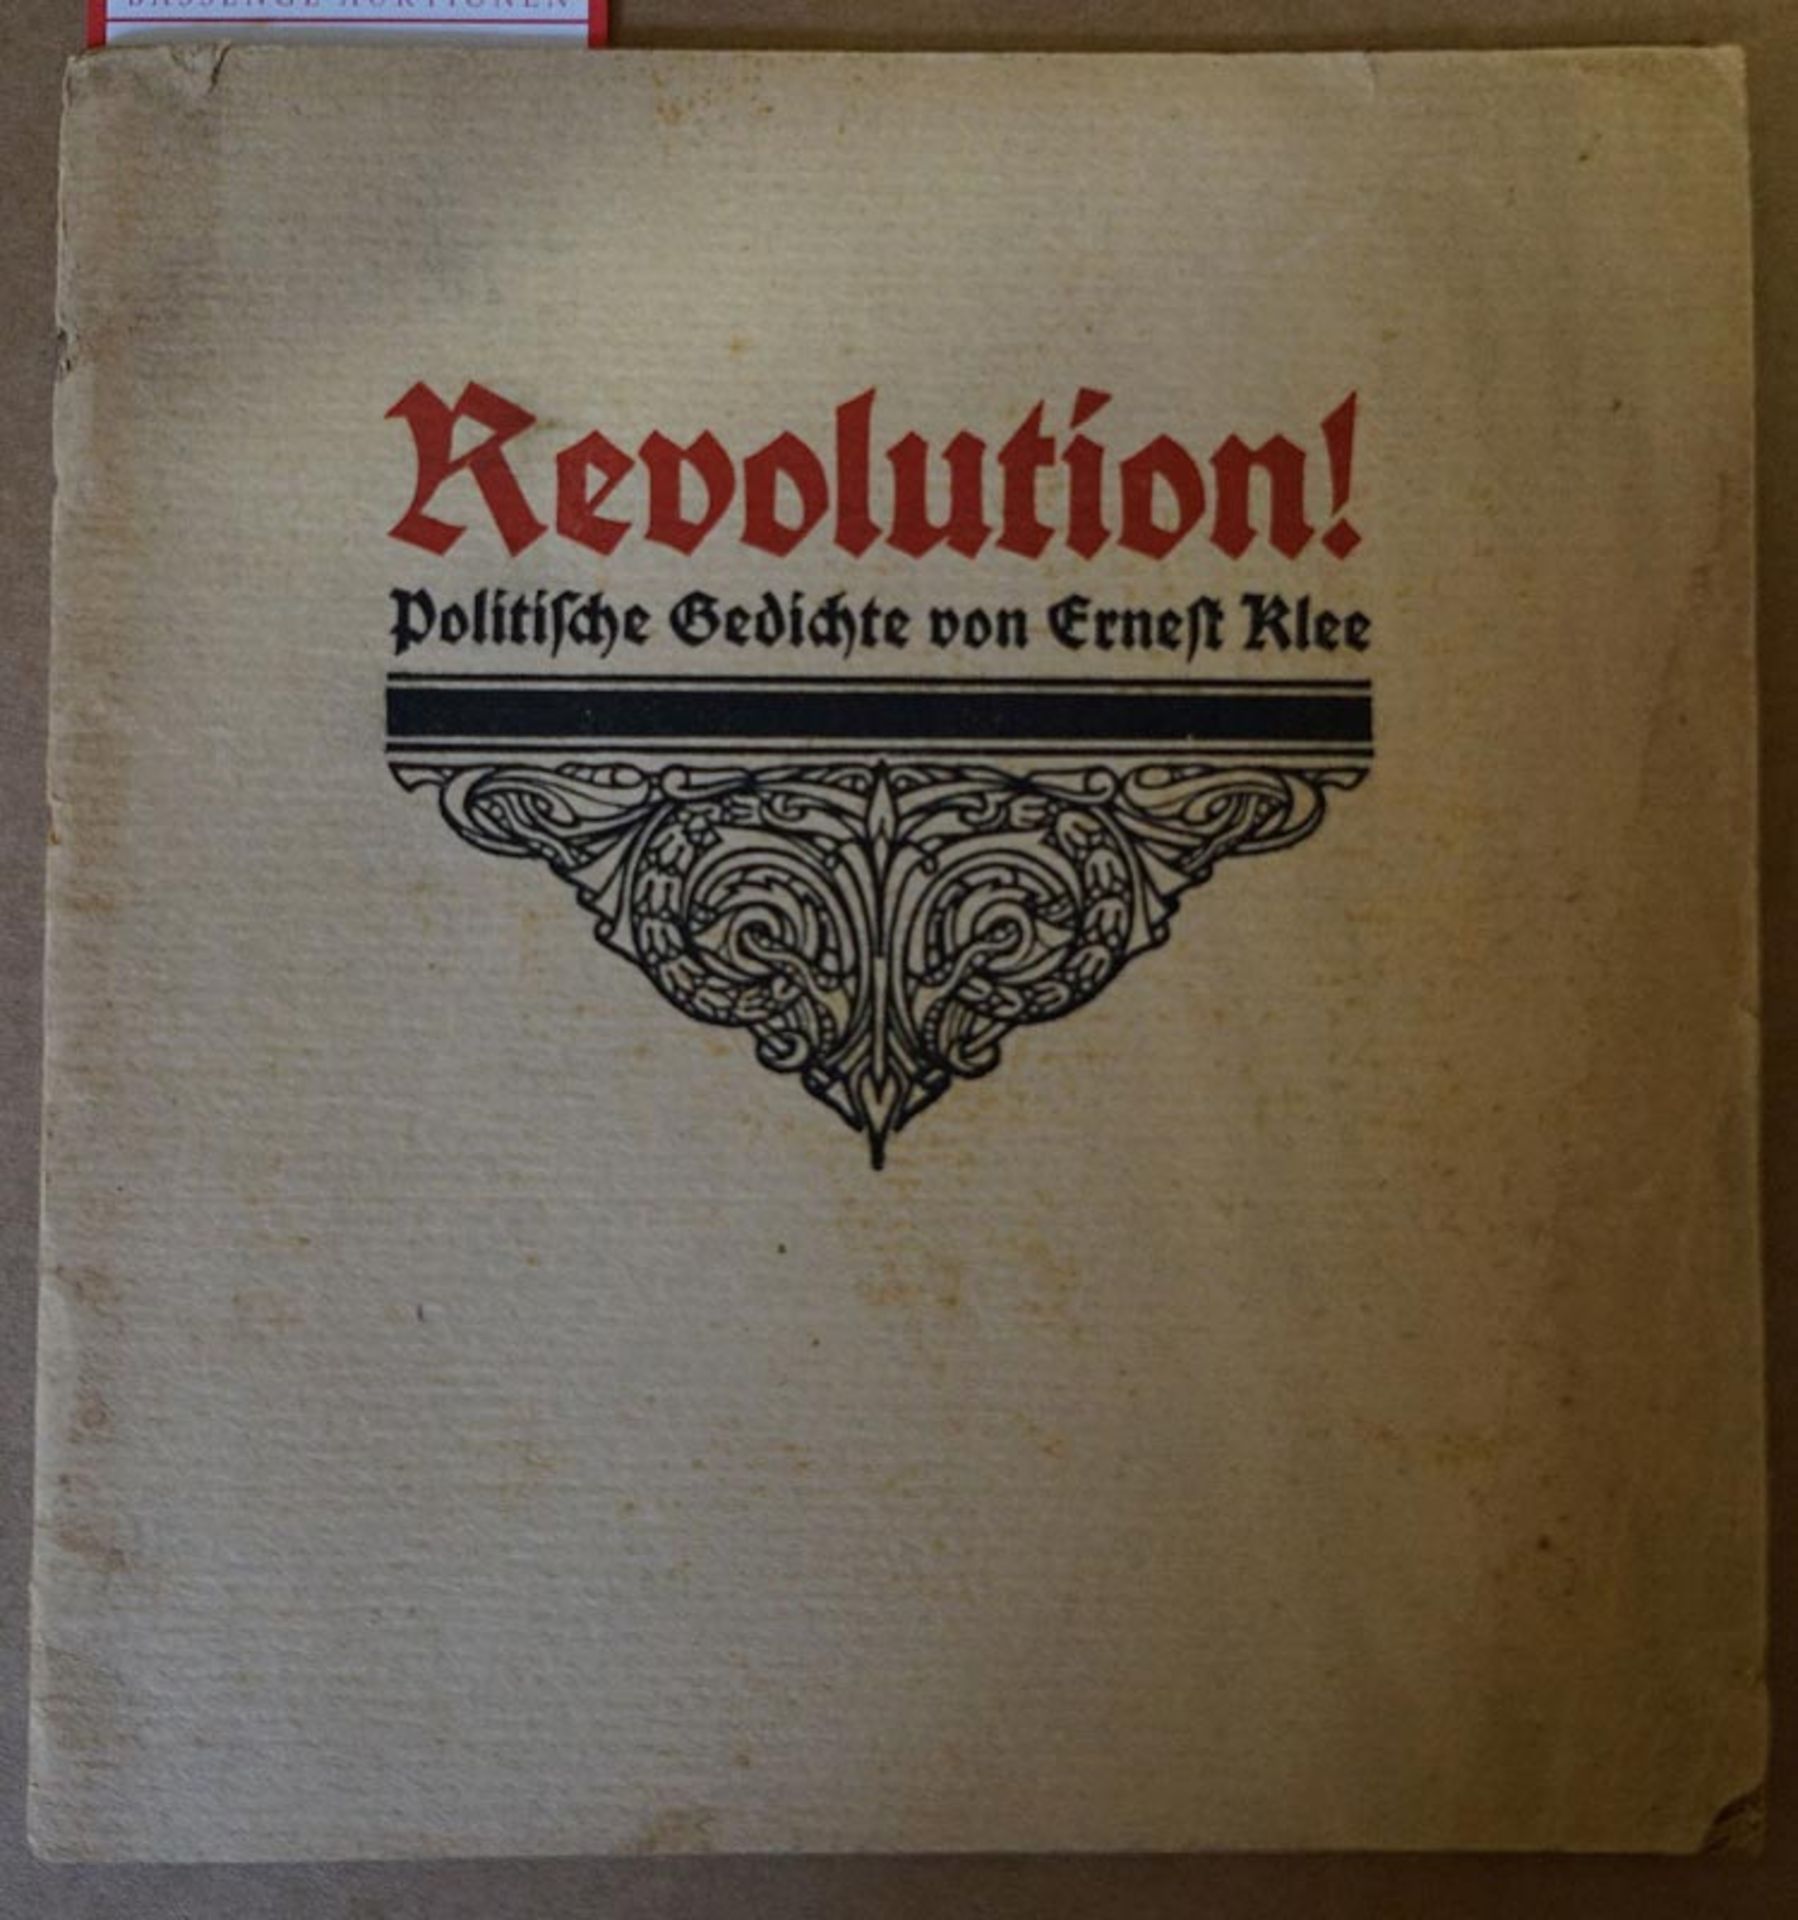 Klee, Ernest: Revolution!